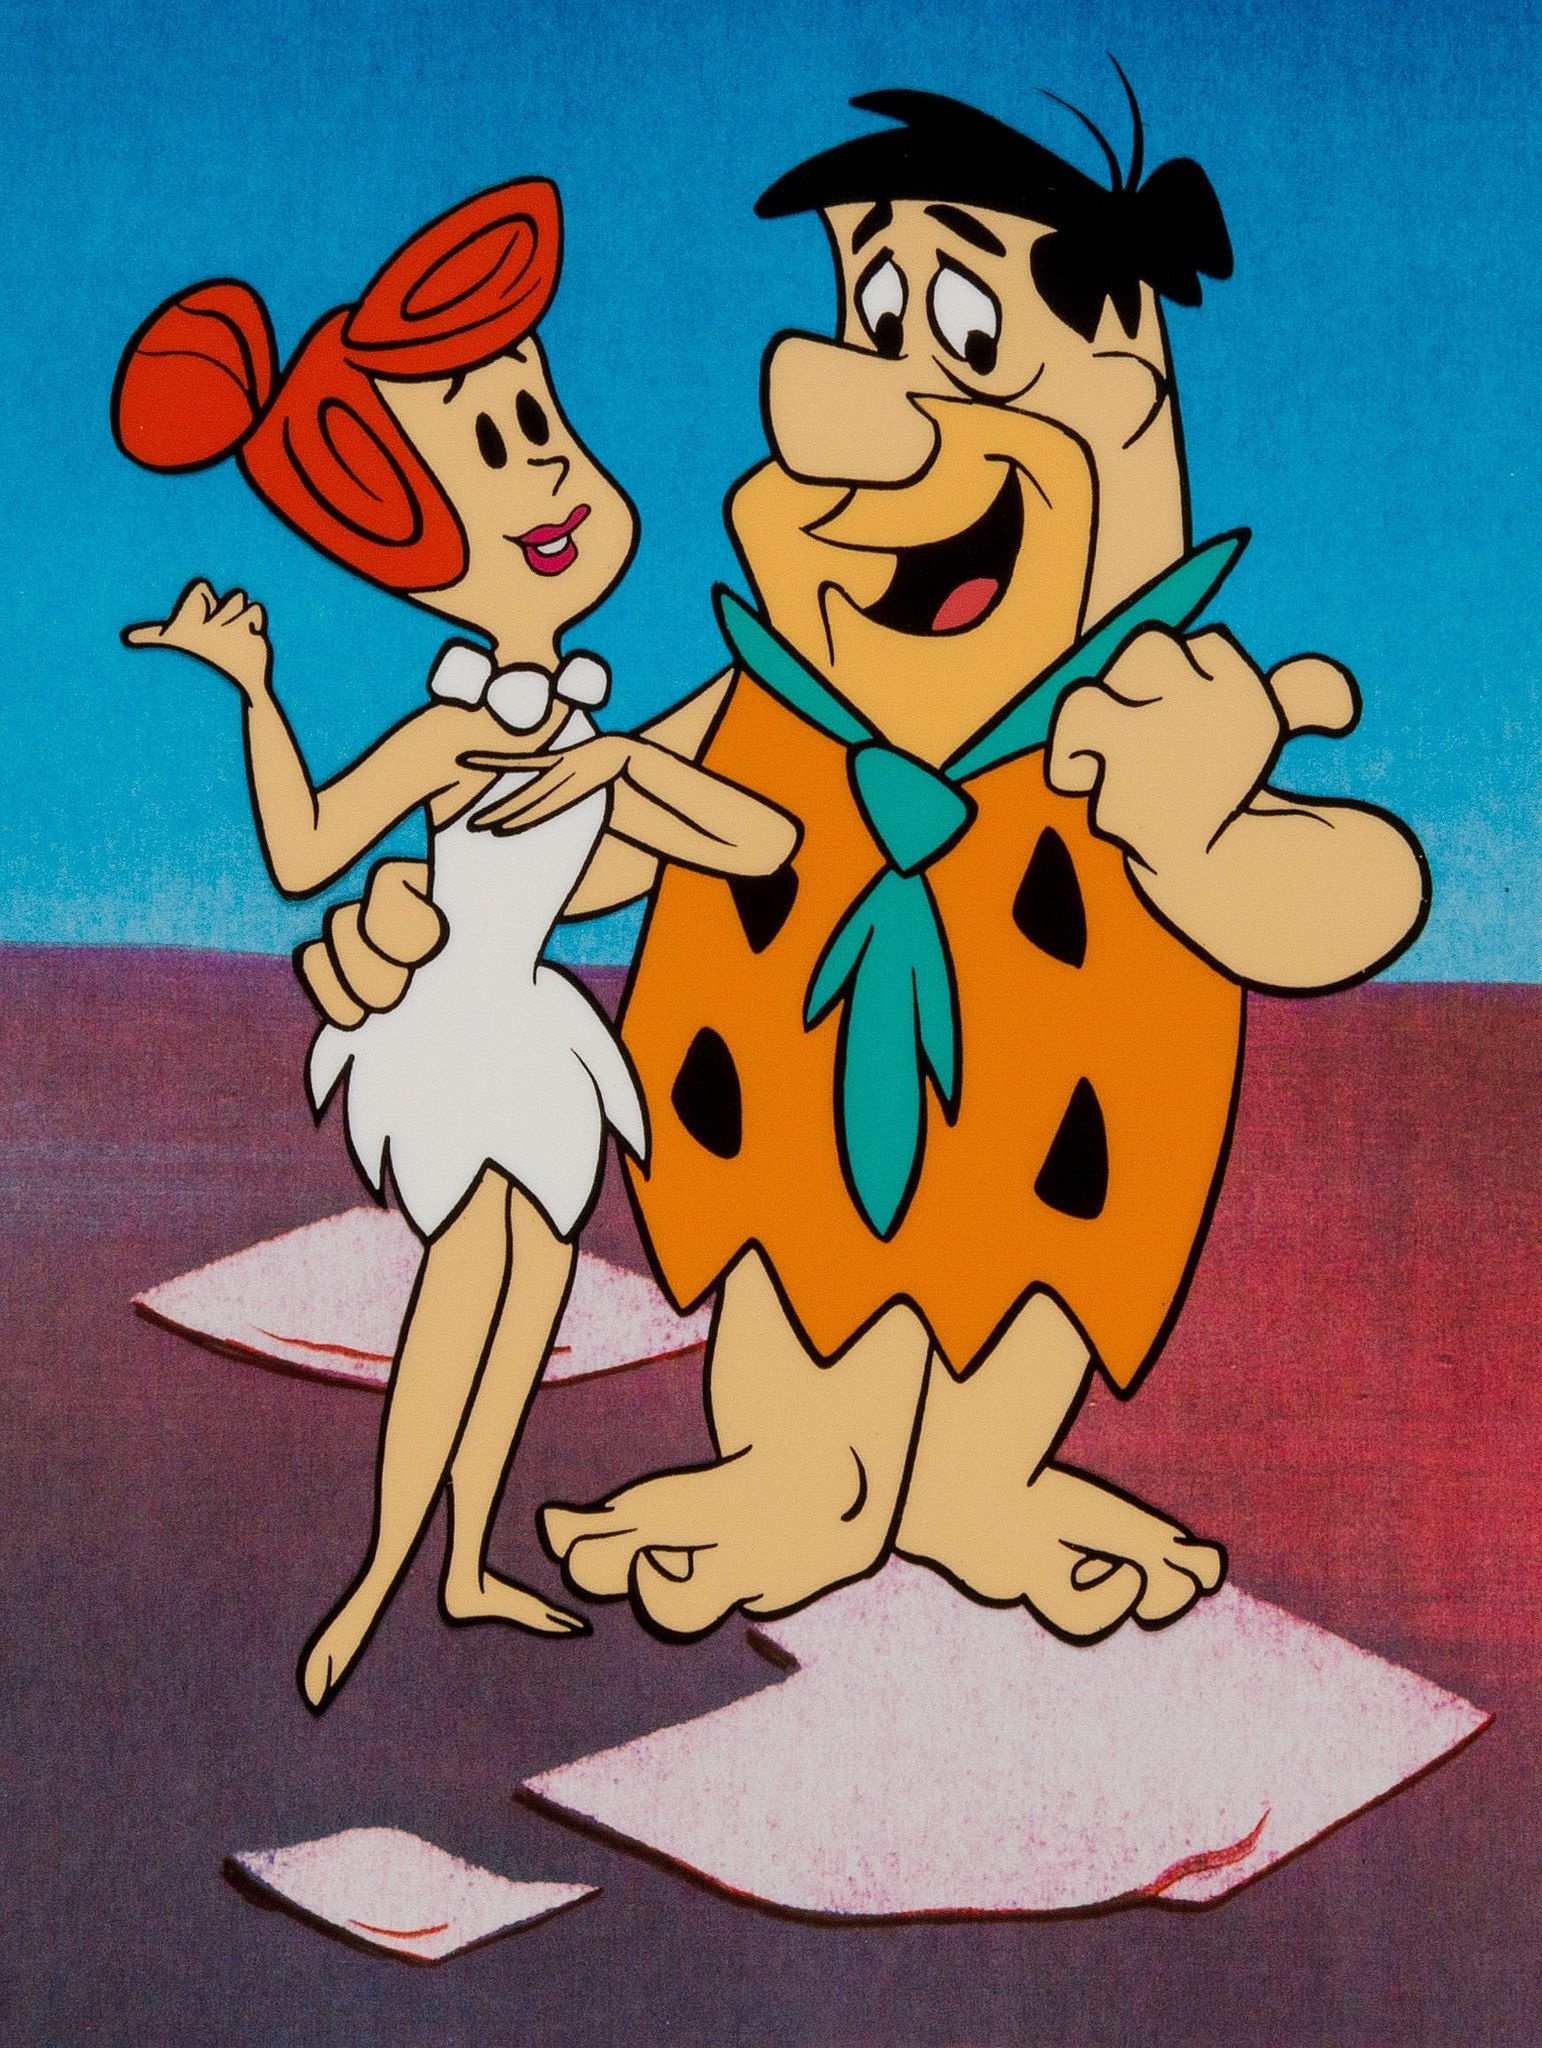 The Flintstones (Cartoon) Wallpapers (36+ images inside)